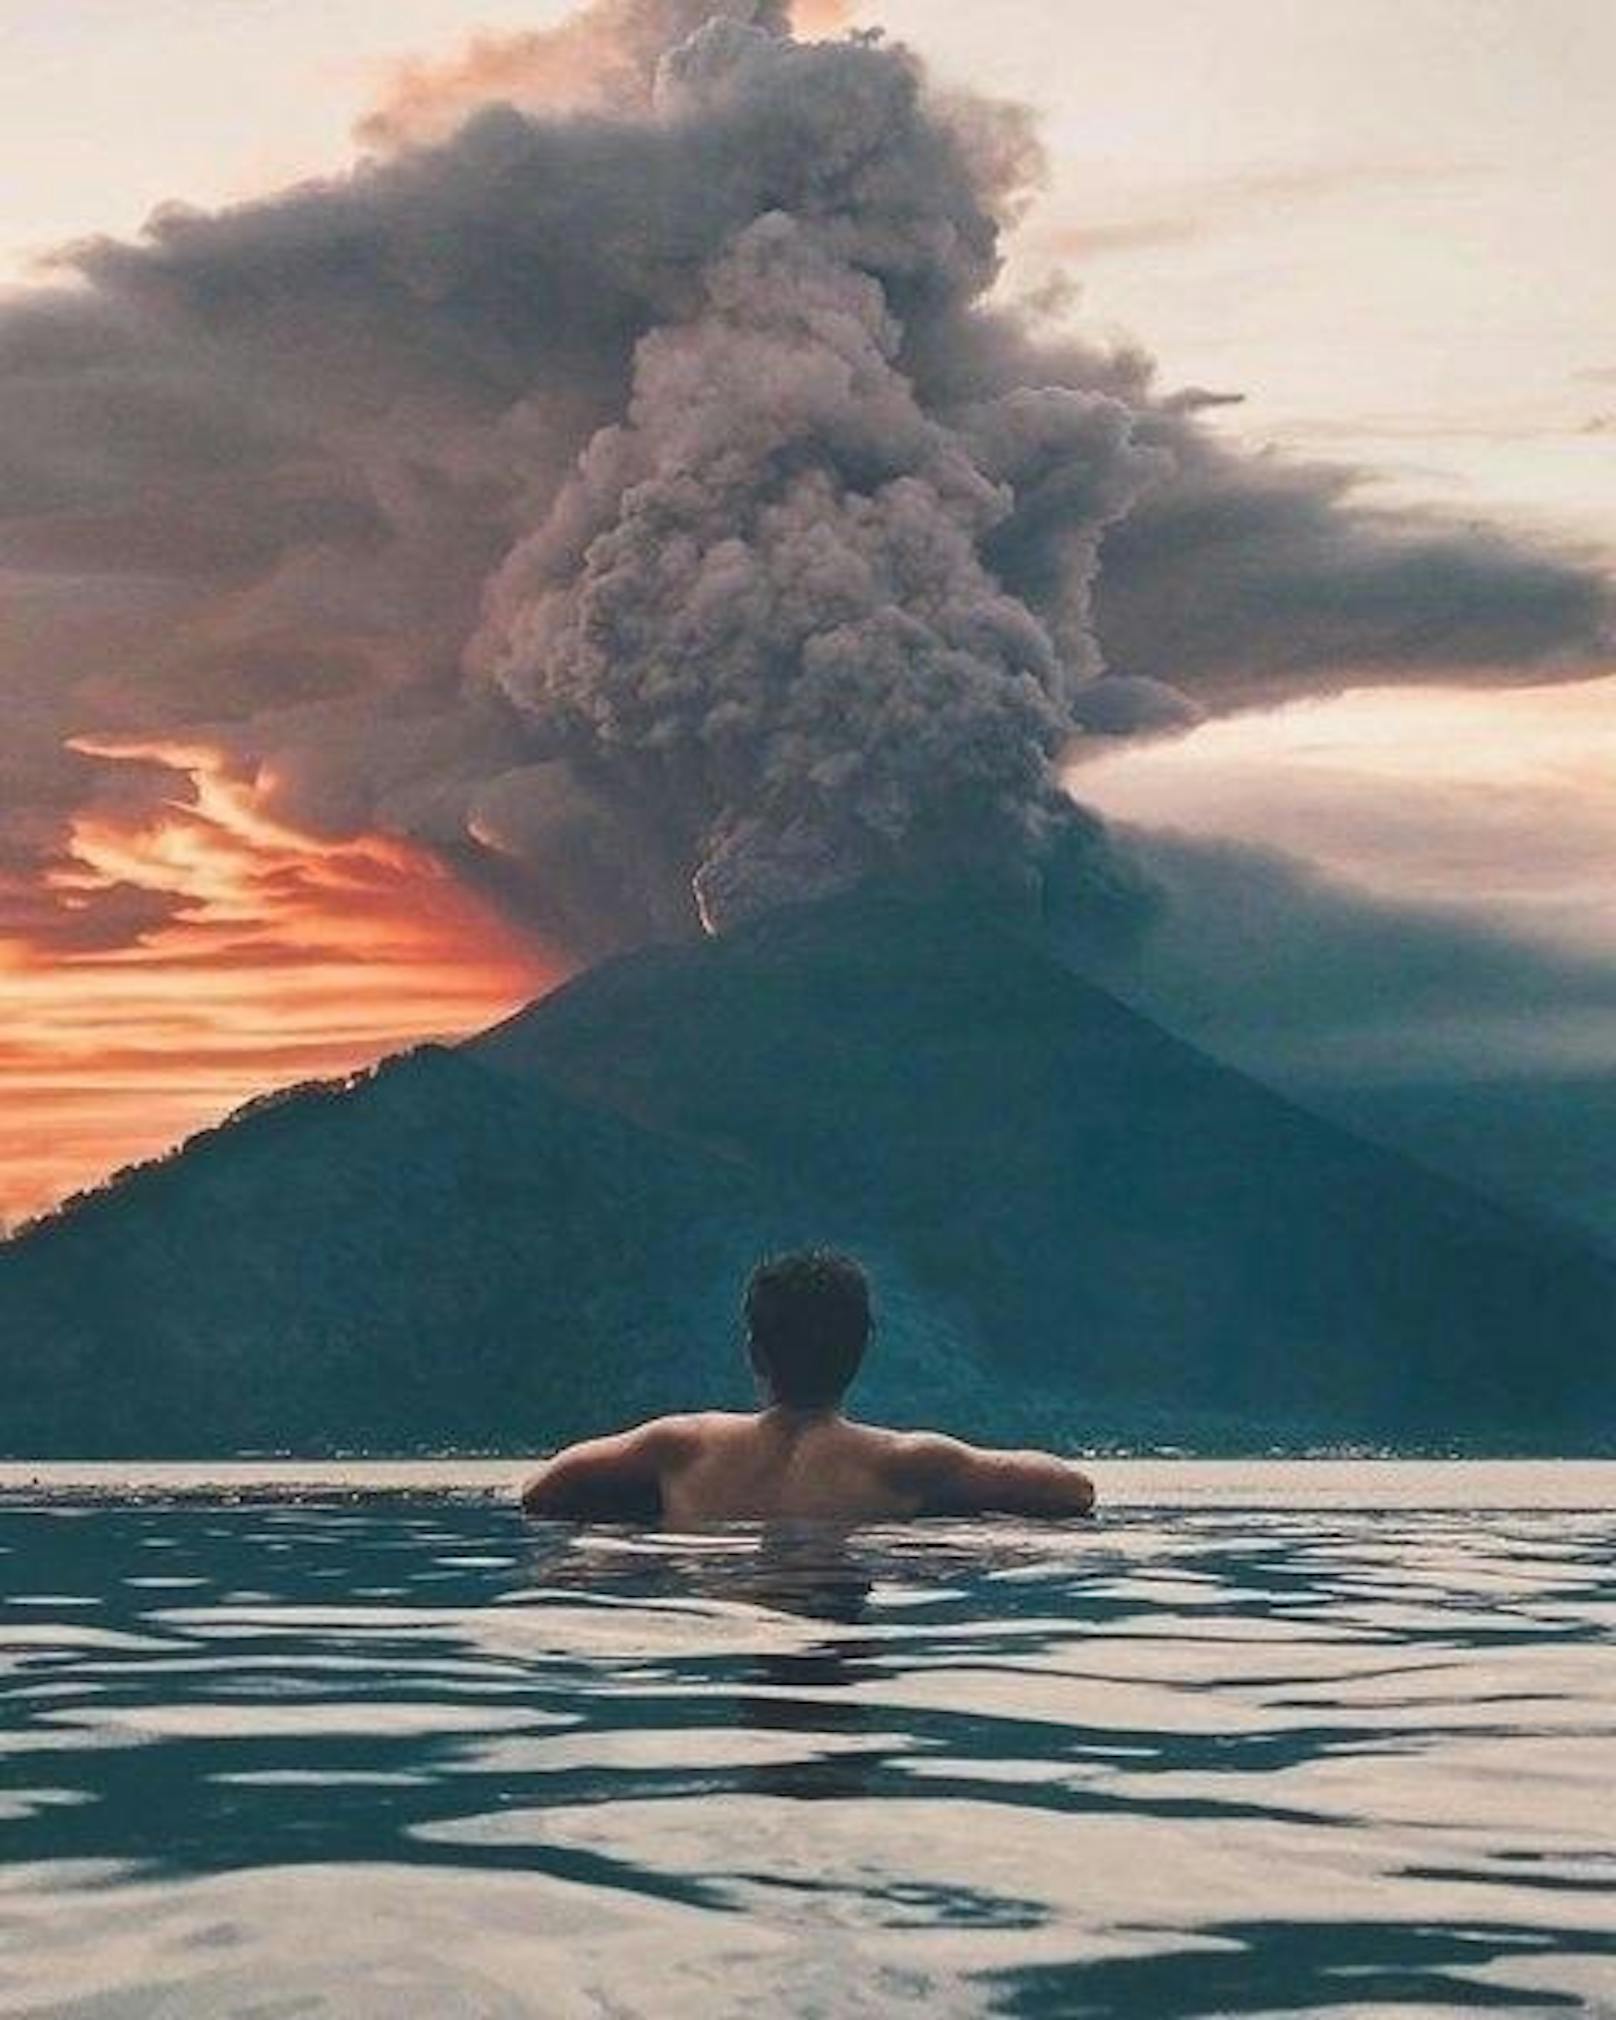 Mit solchen Bildunterschriften verharmlosen Instagrammer das Schicksal der Menschen, die wirklich betroffen sind und nicht nur für ein paar Likes auf Bali residieren.